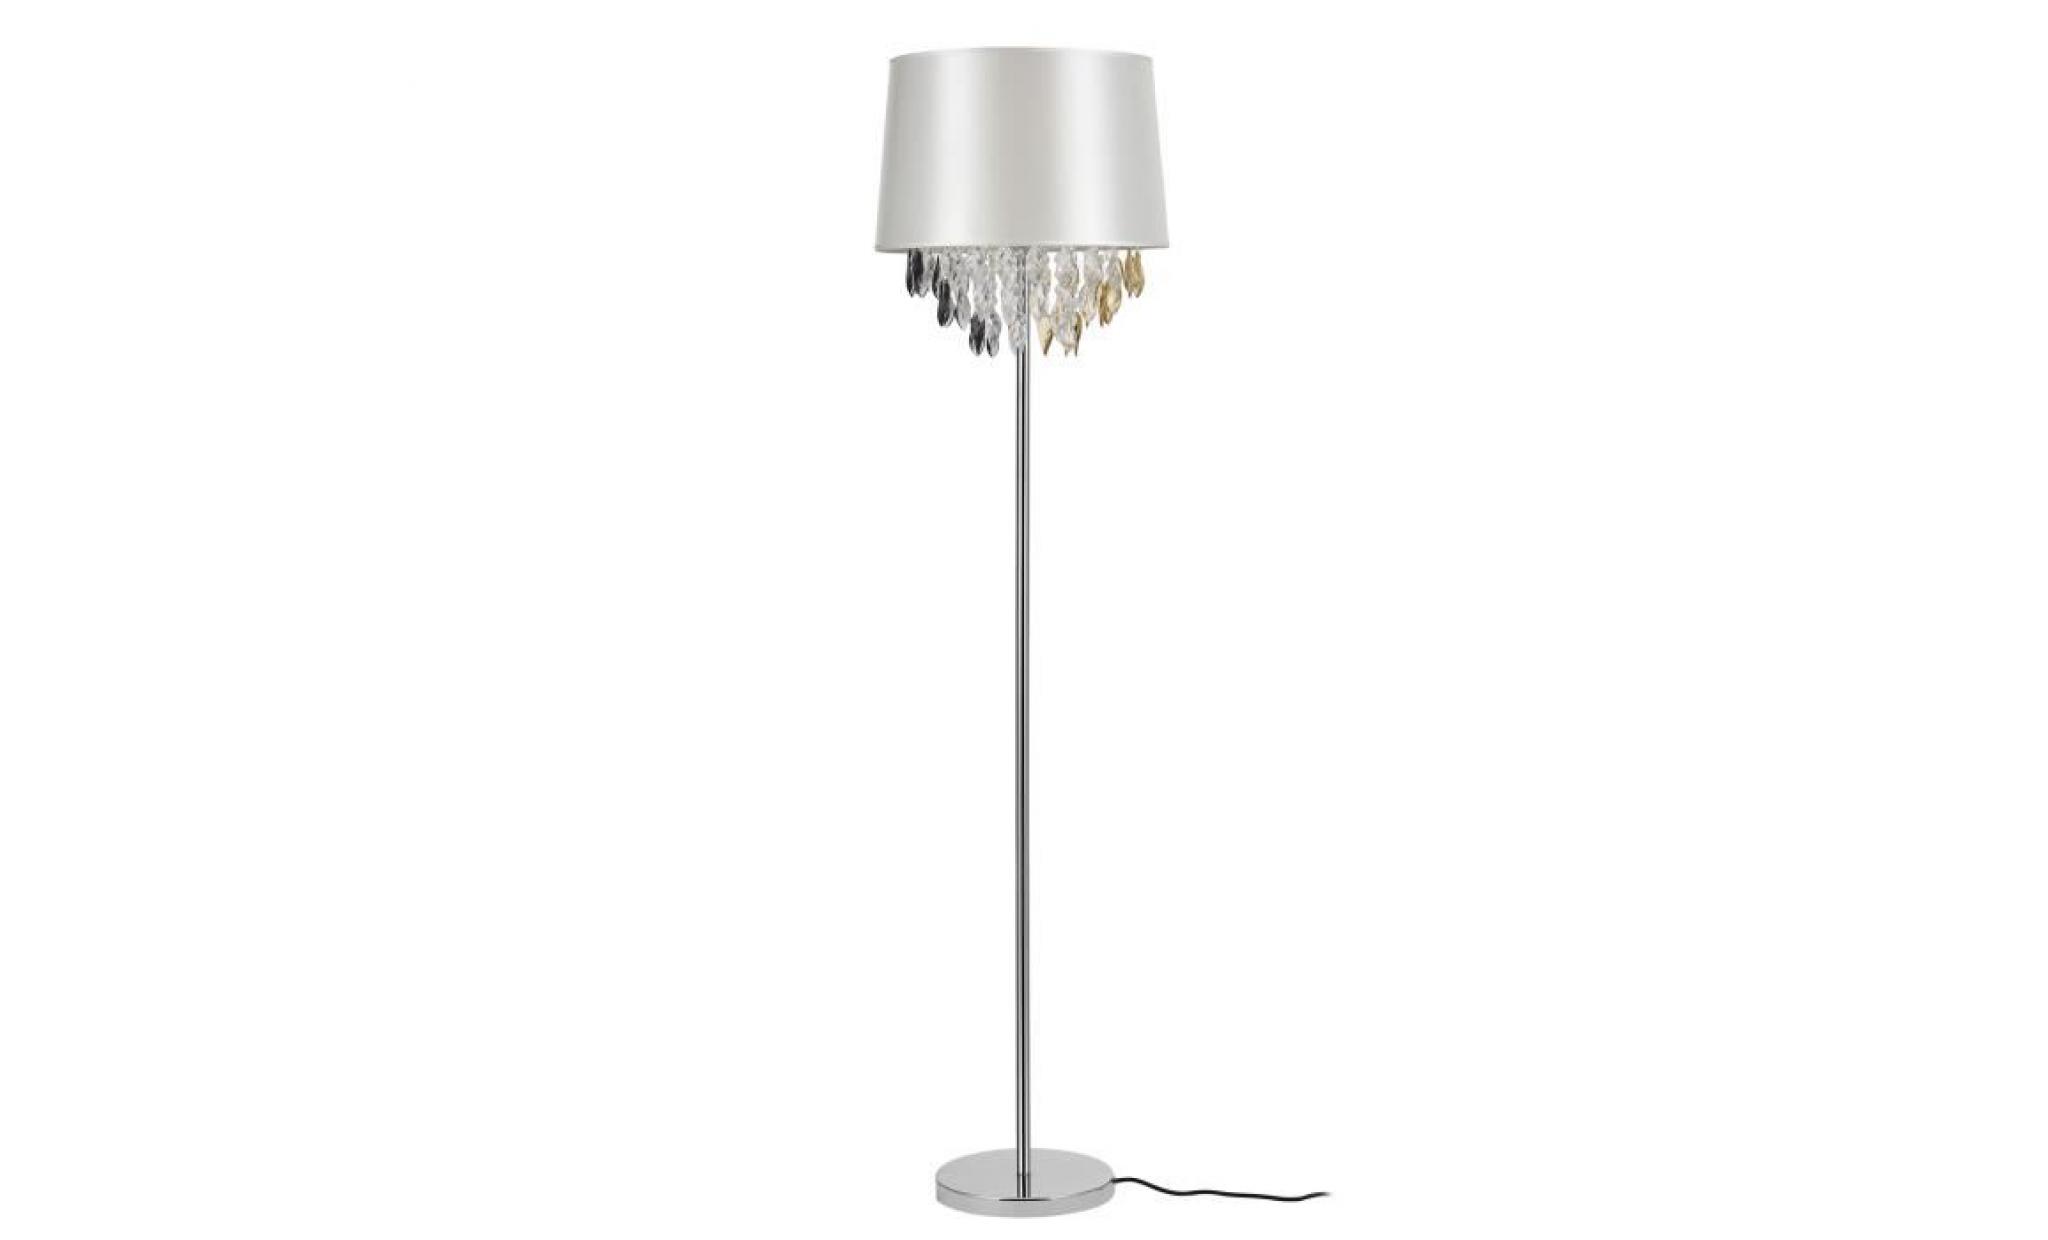 lux.pro lampadaire lampe sur pied (1 x socle e27)(165 cm x Ø 40 cm) pied chromé + abat jour argent + pendeloque de cristal lampe ... pas cher